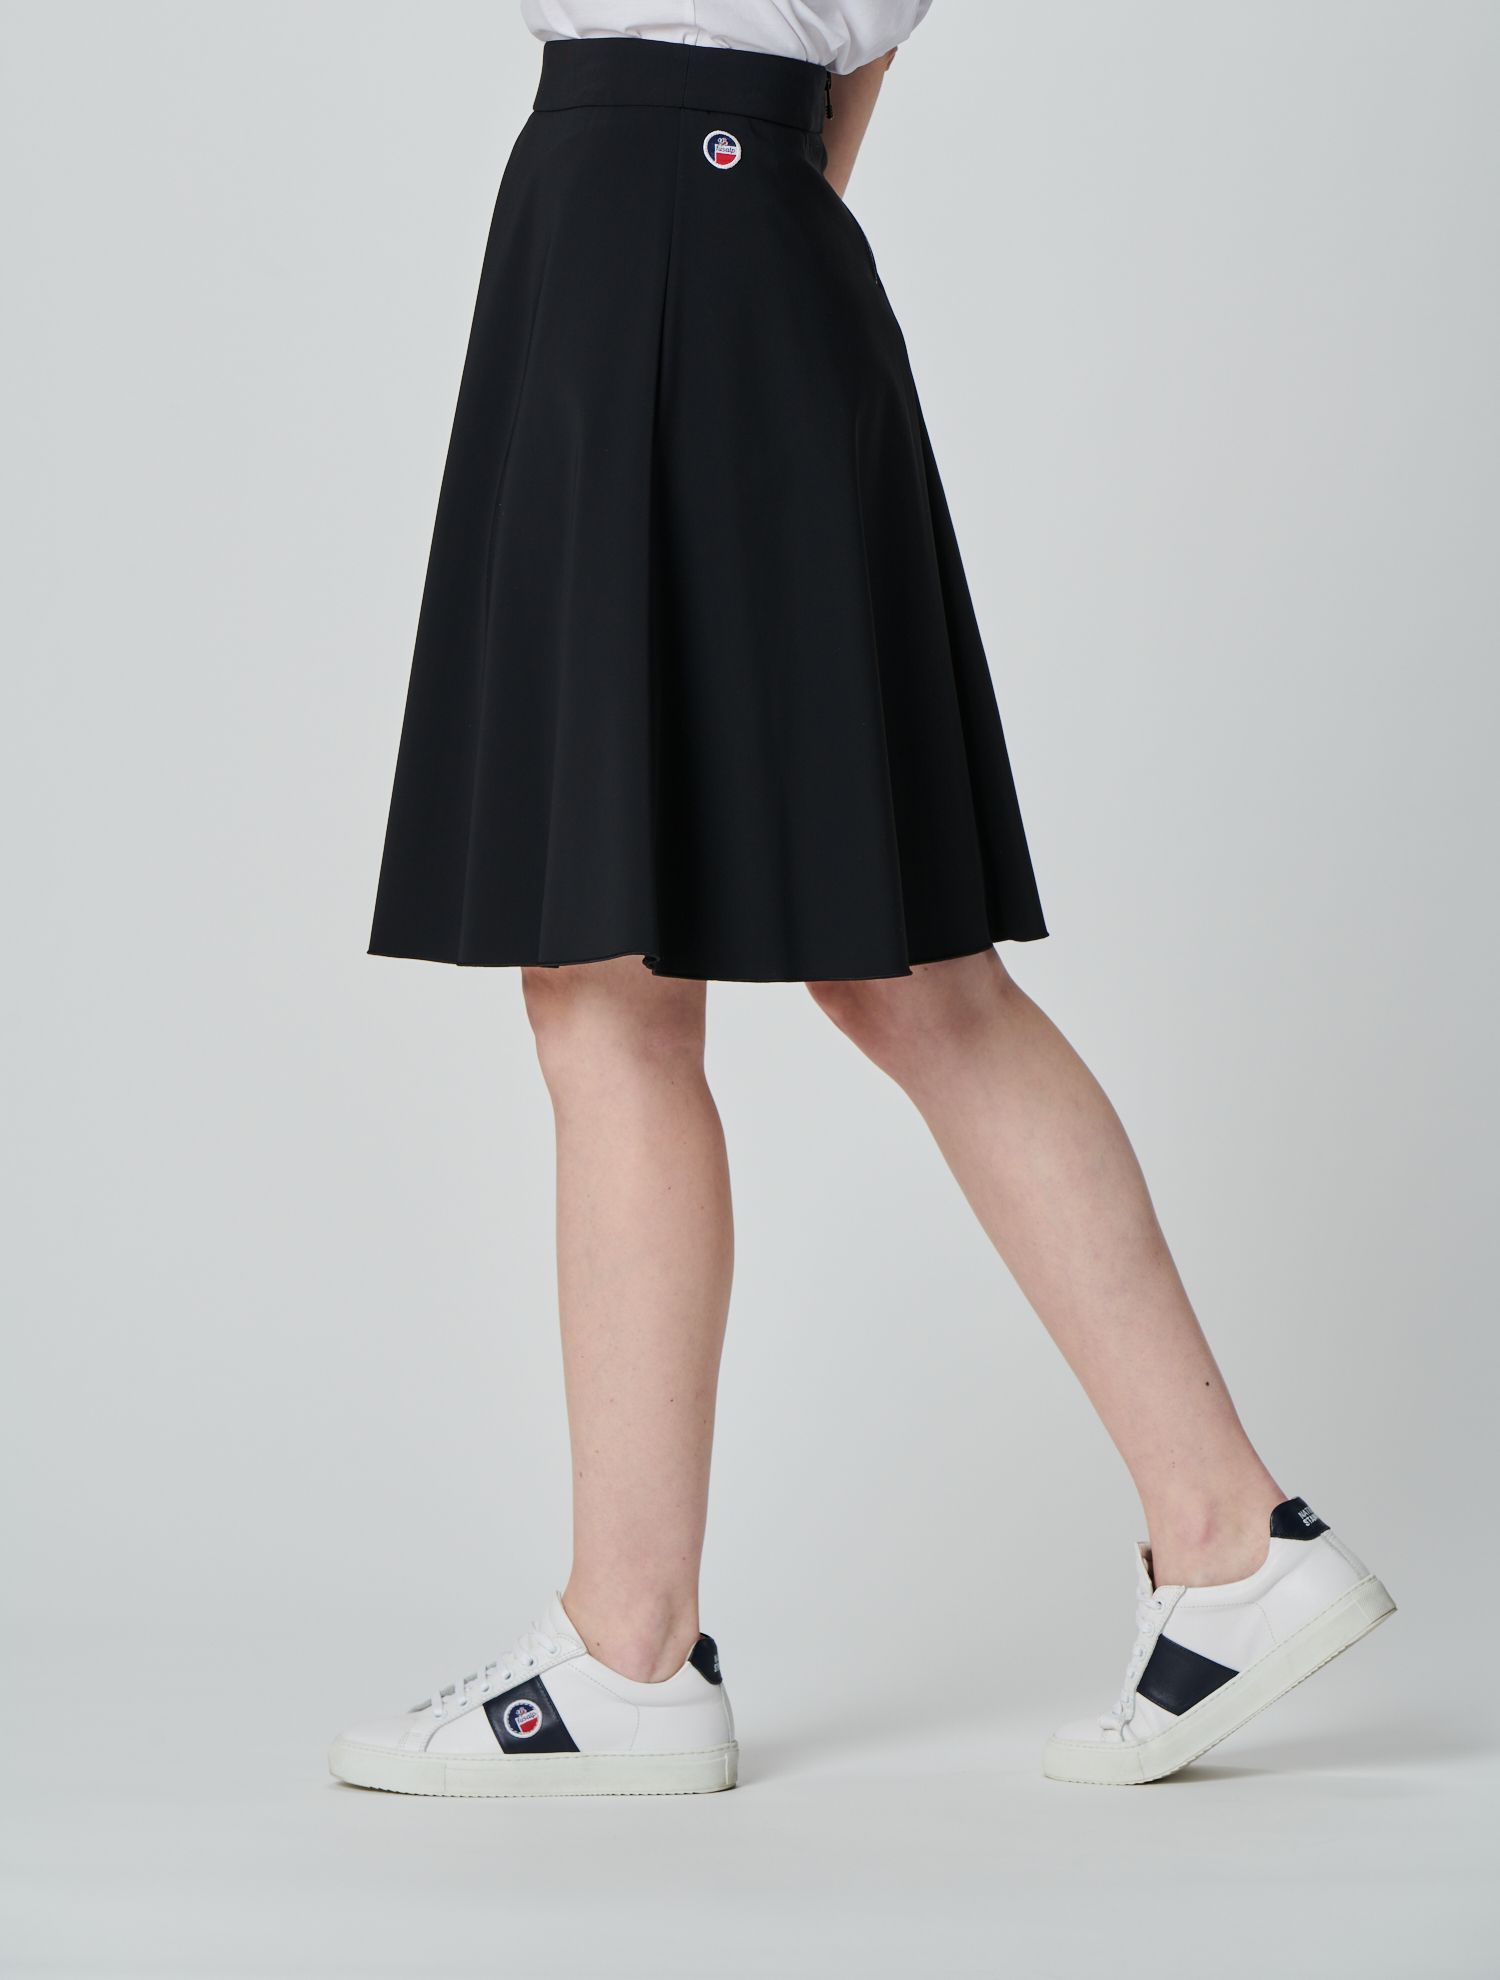 Fusalp - Herelle skirt: Skater long skirt for women